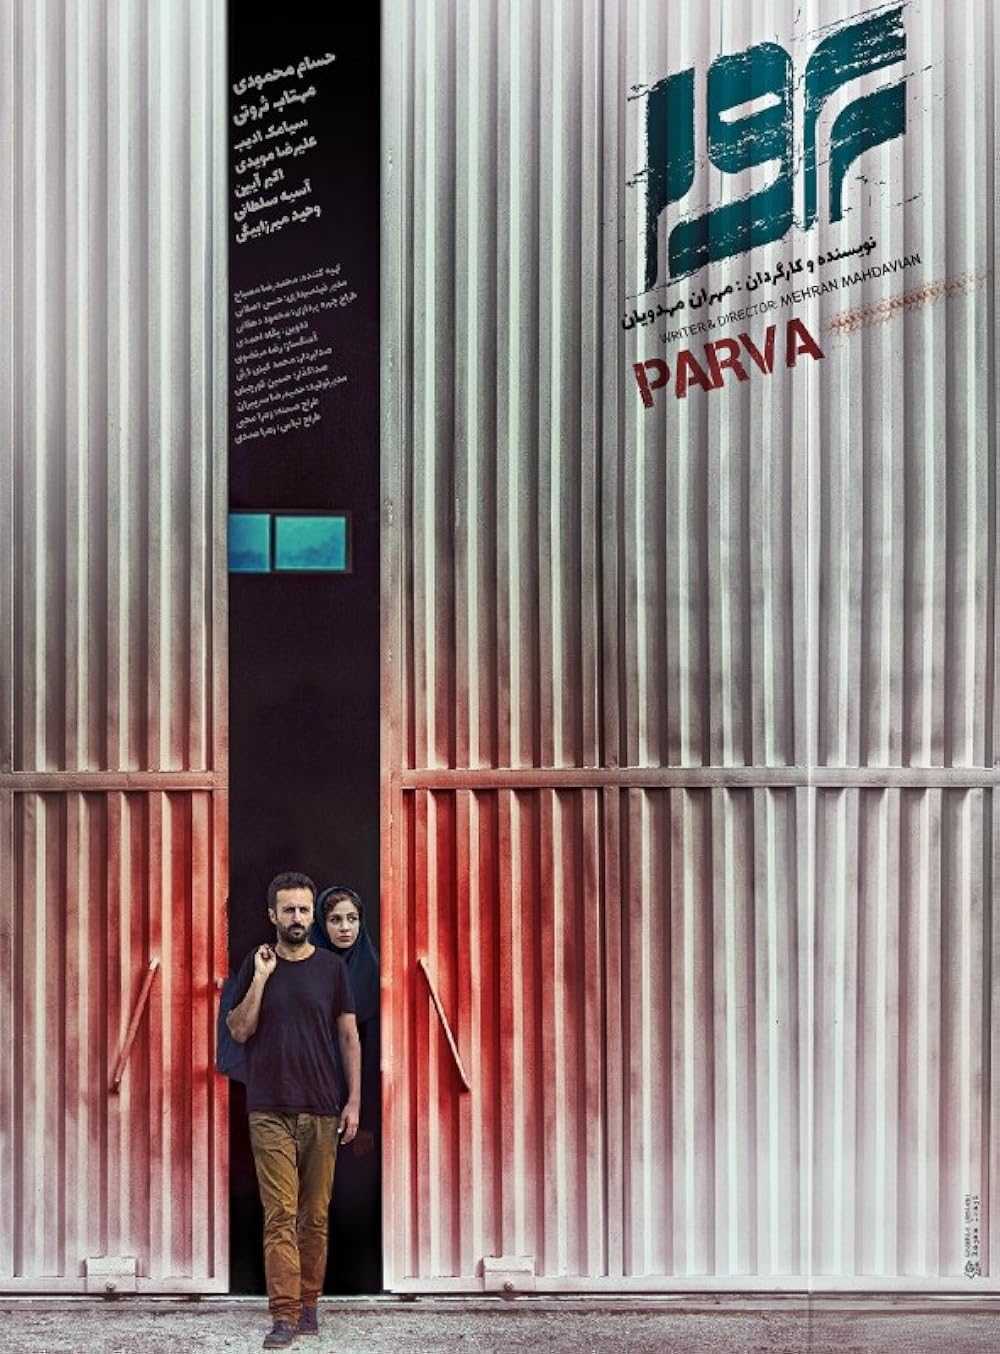 فیلم پروا Parva 2019 دانلود و تماشای آنلاین